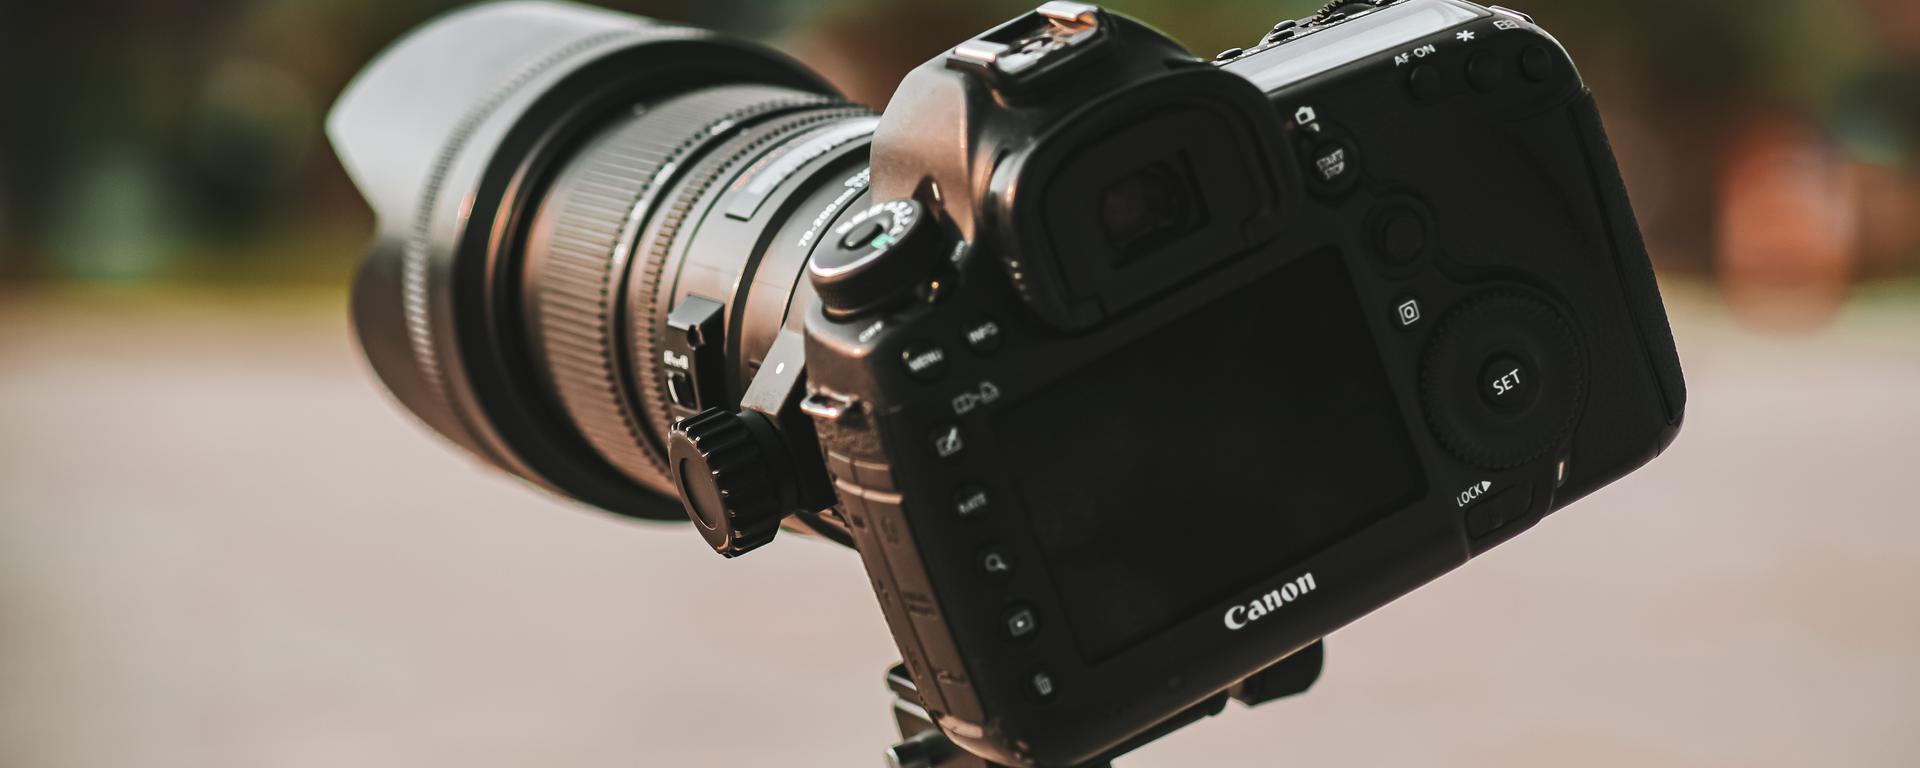 Cómo elegir tu primera cámara fotográfica? Aspectos para considerar antes de comprar una | Cámaras digitales | Sony | Canon | Nikon | Pentax | Olympus | TECNOLOGIA EL COMERCIO PERÚ